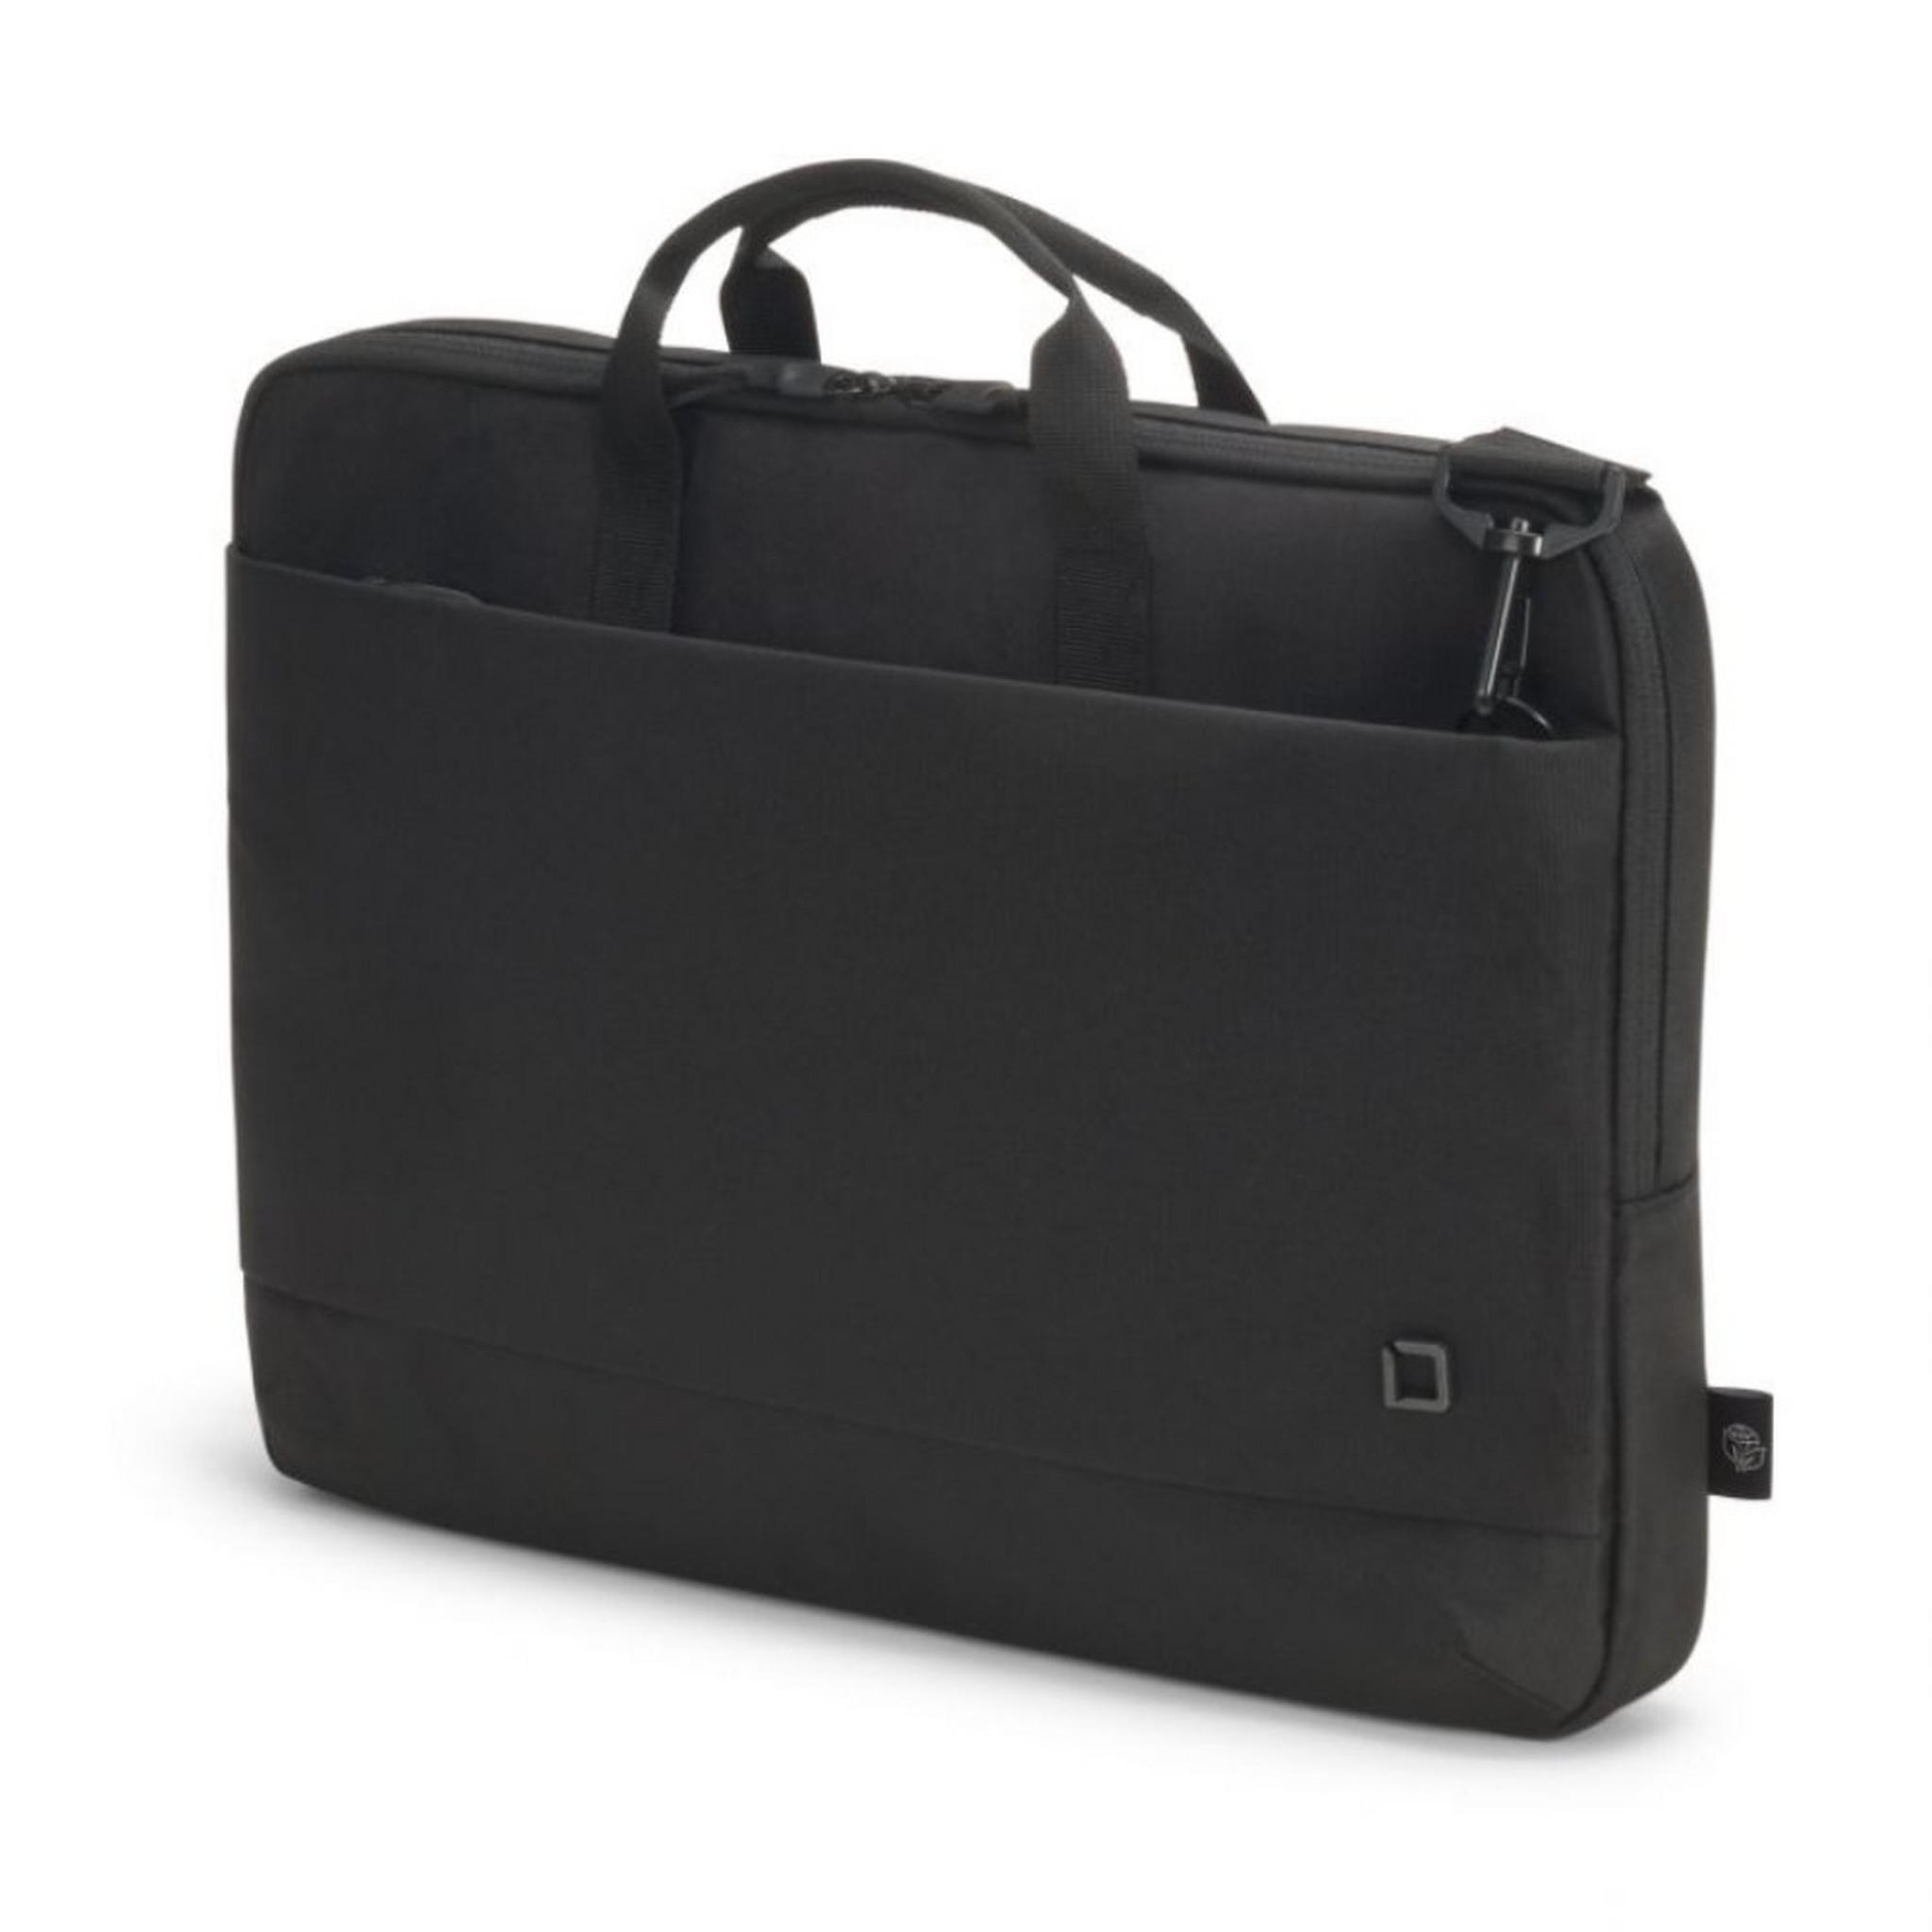 حقيبة ايكو سليم موشن للابتوب بحجم 13.3 بوصة من ديكوتا - أسود